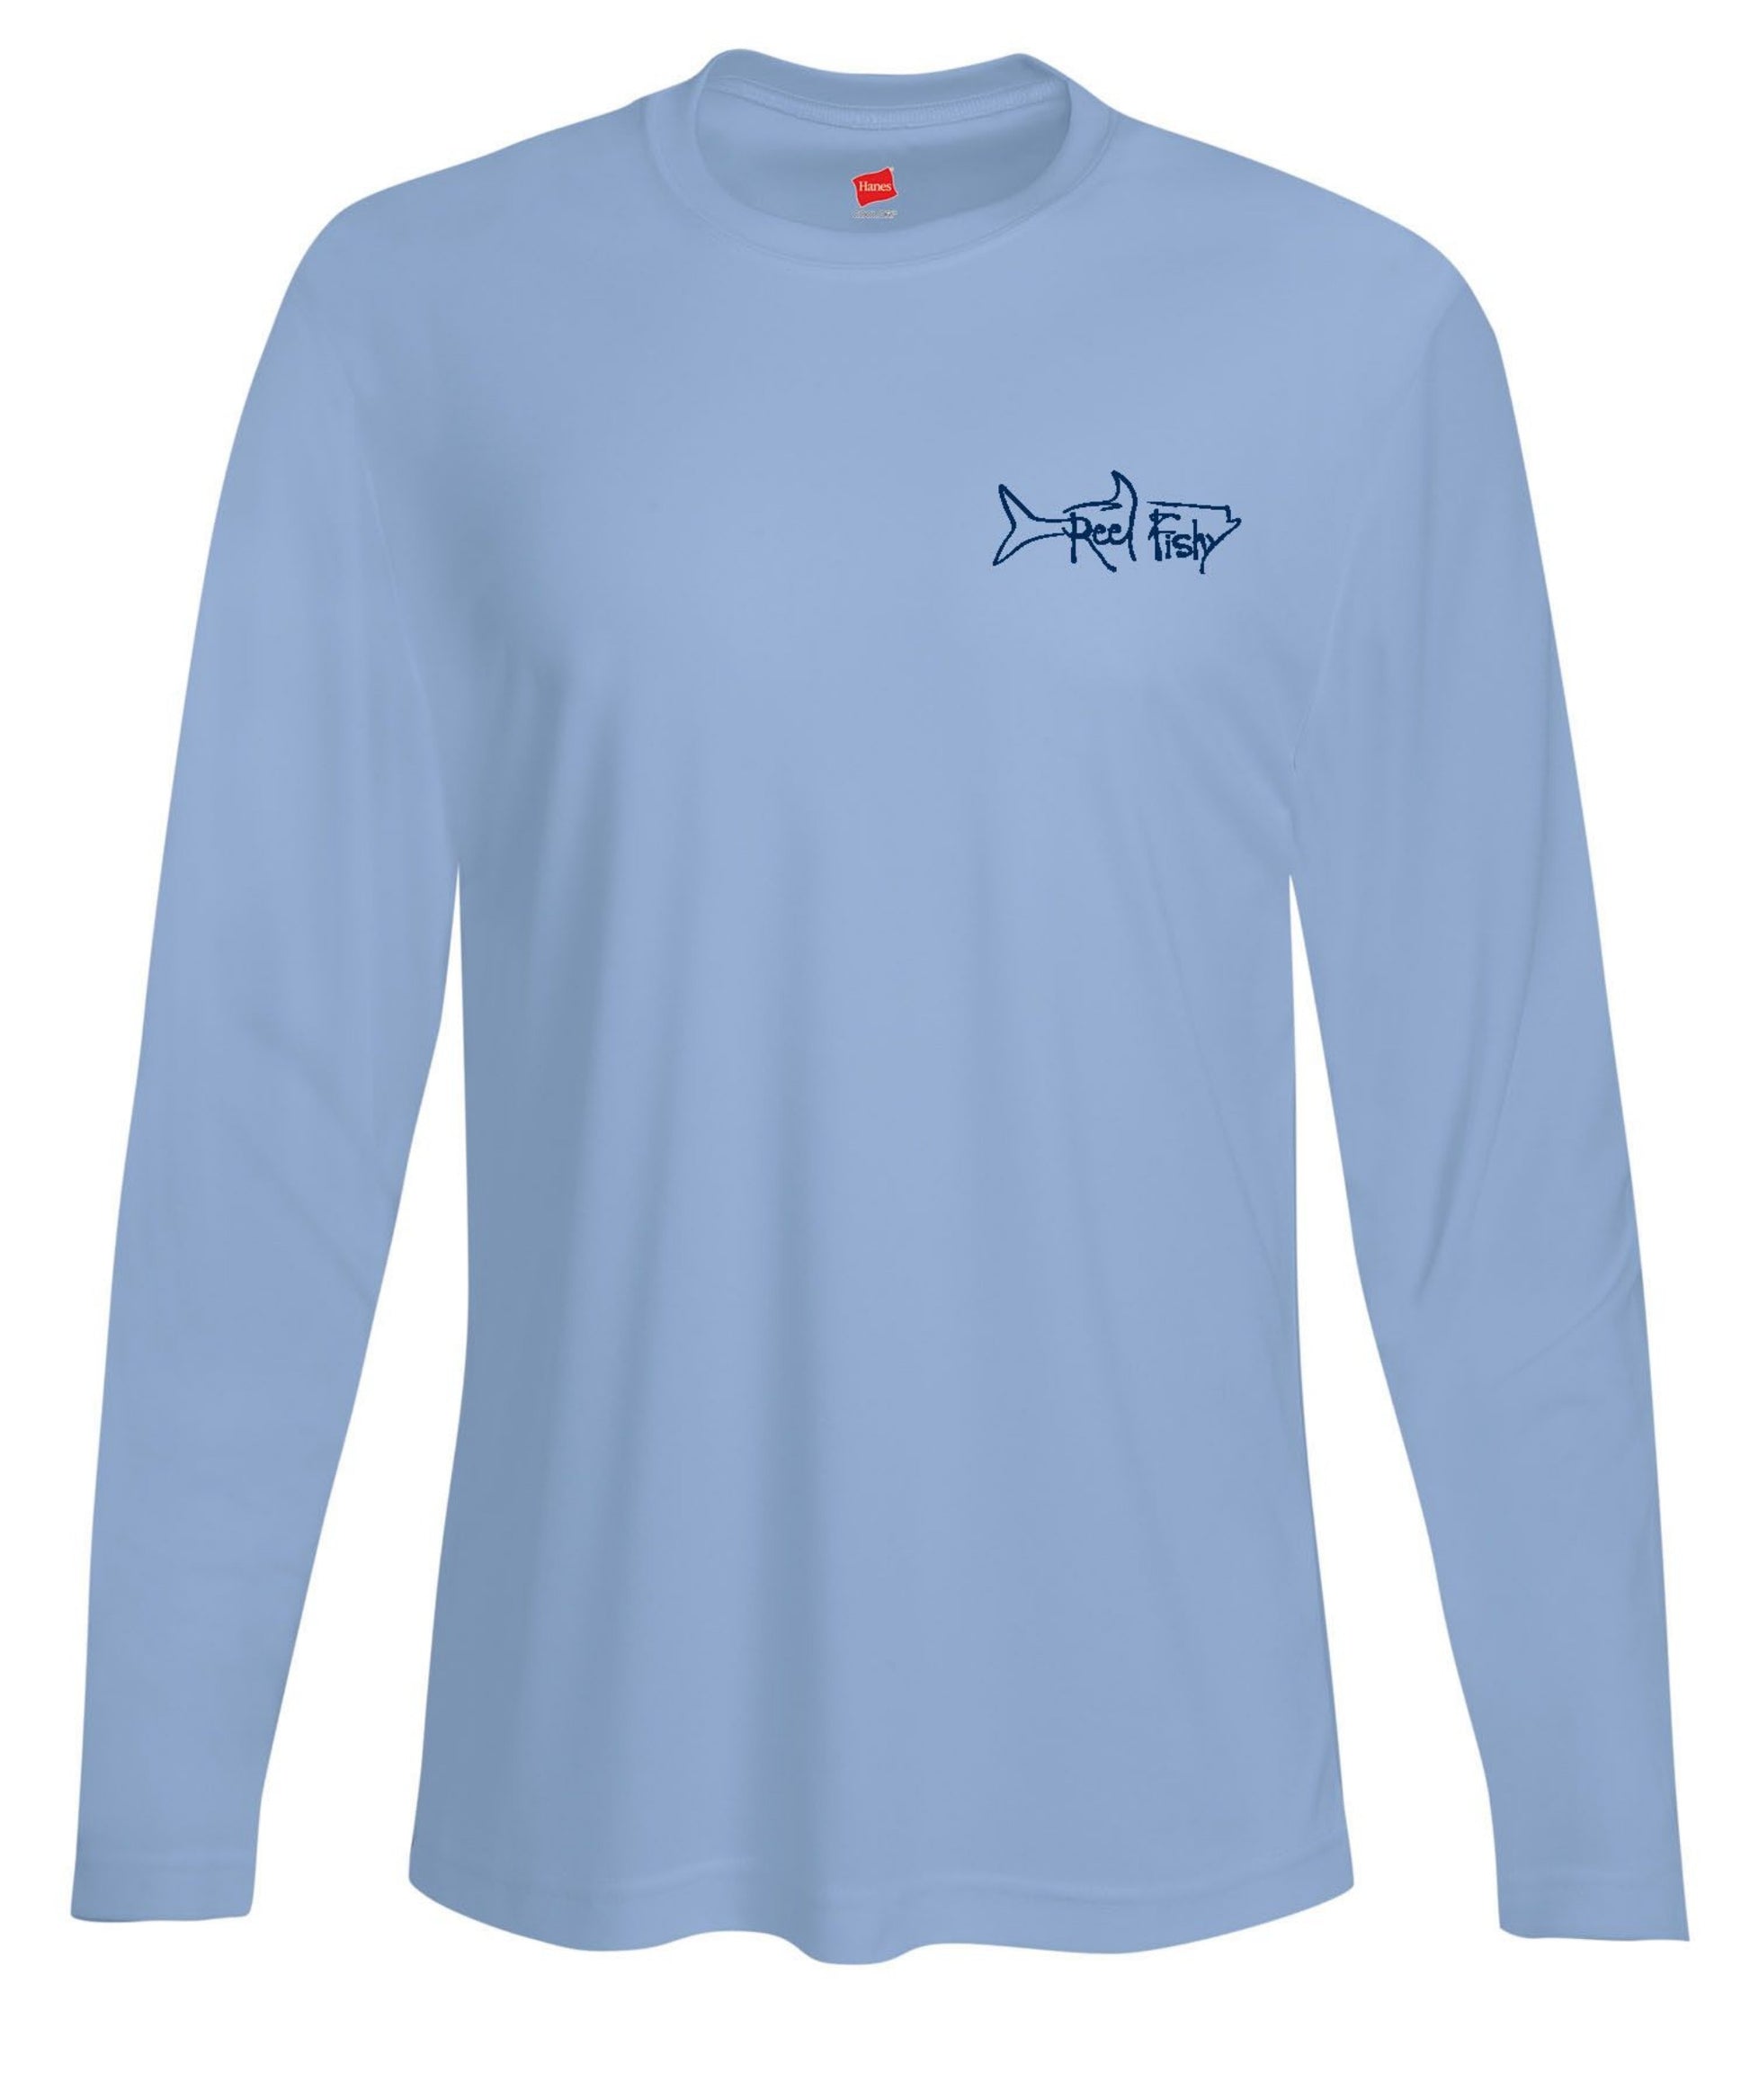 Tuna Fishing Performance Dry-Fit Sun Shirt 50+Upf - Reel Fishy Raw Bar XS / Lt. Blue S/S - unisex